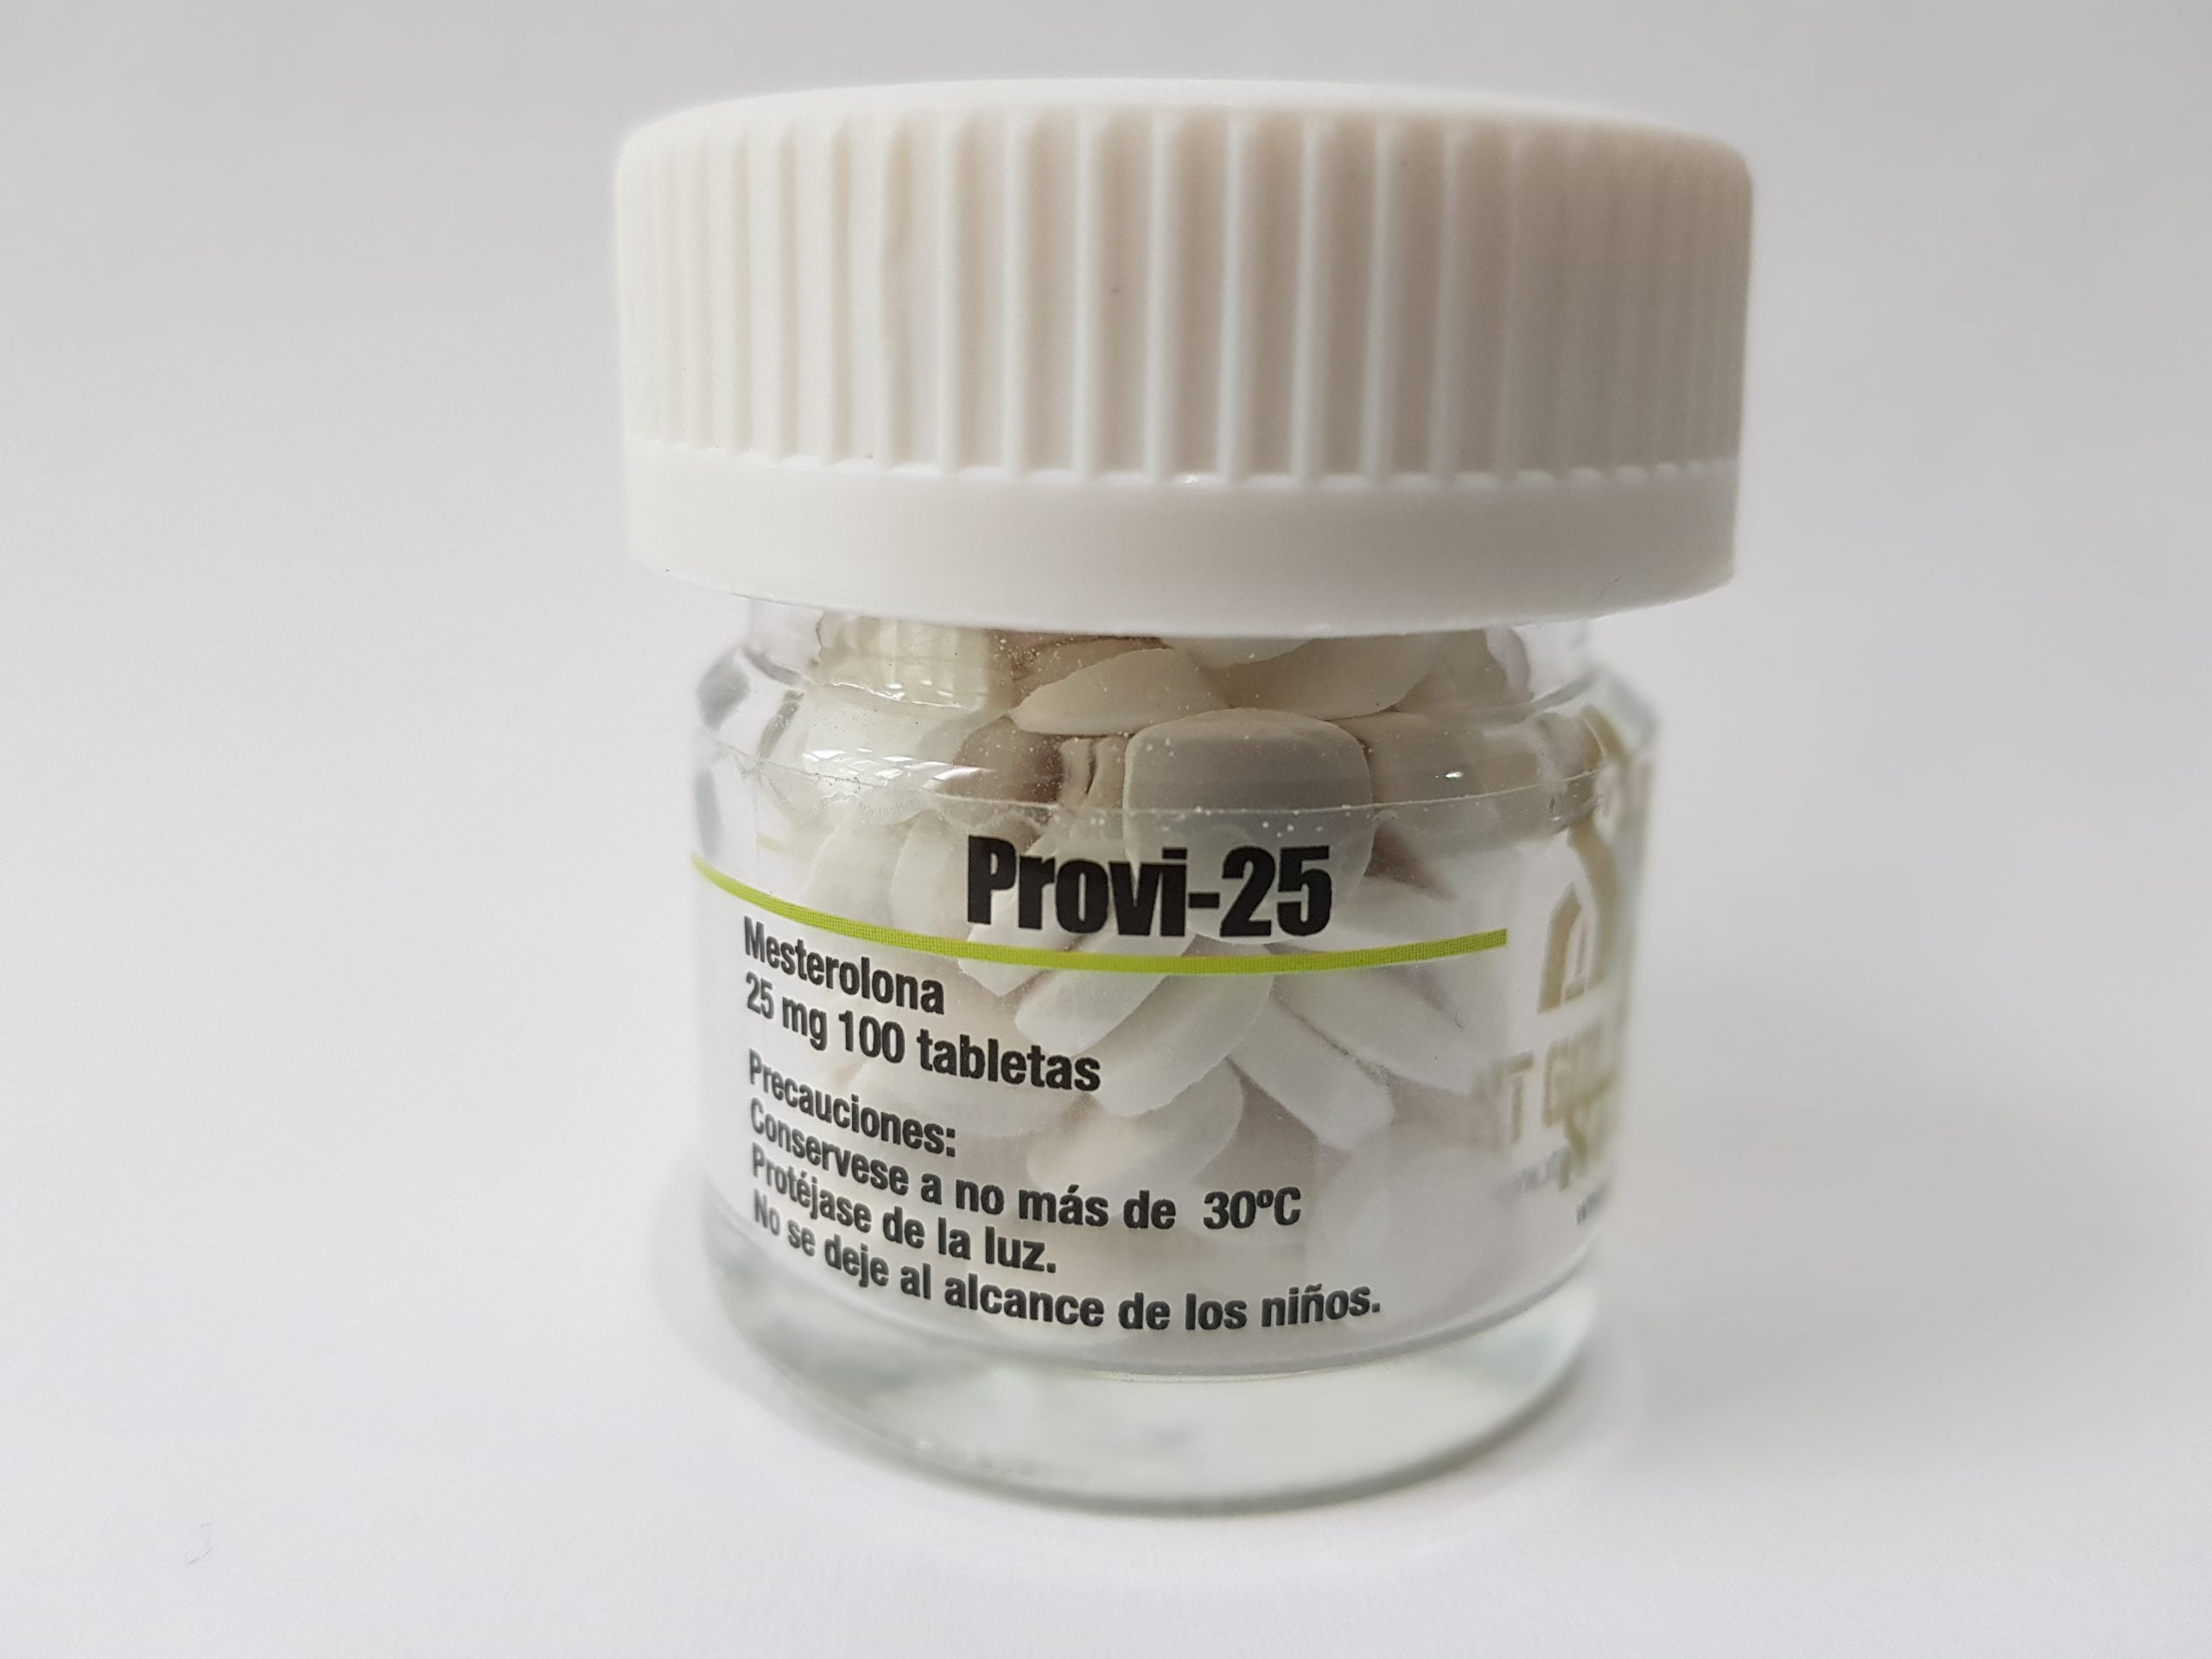 Primoged (enantato de metenolona) 10ml – 100 mg / 1 ml: ¿Realmente lo necesita? ¡Esto le ayudará a decidir!